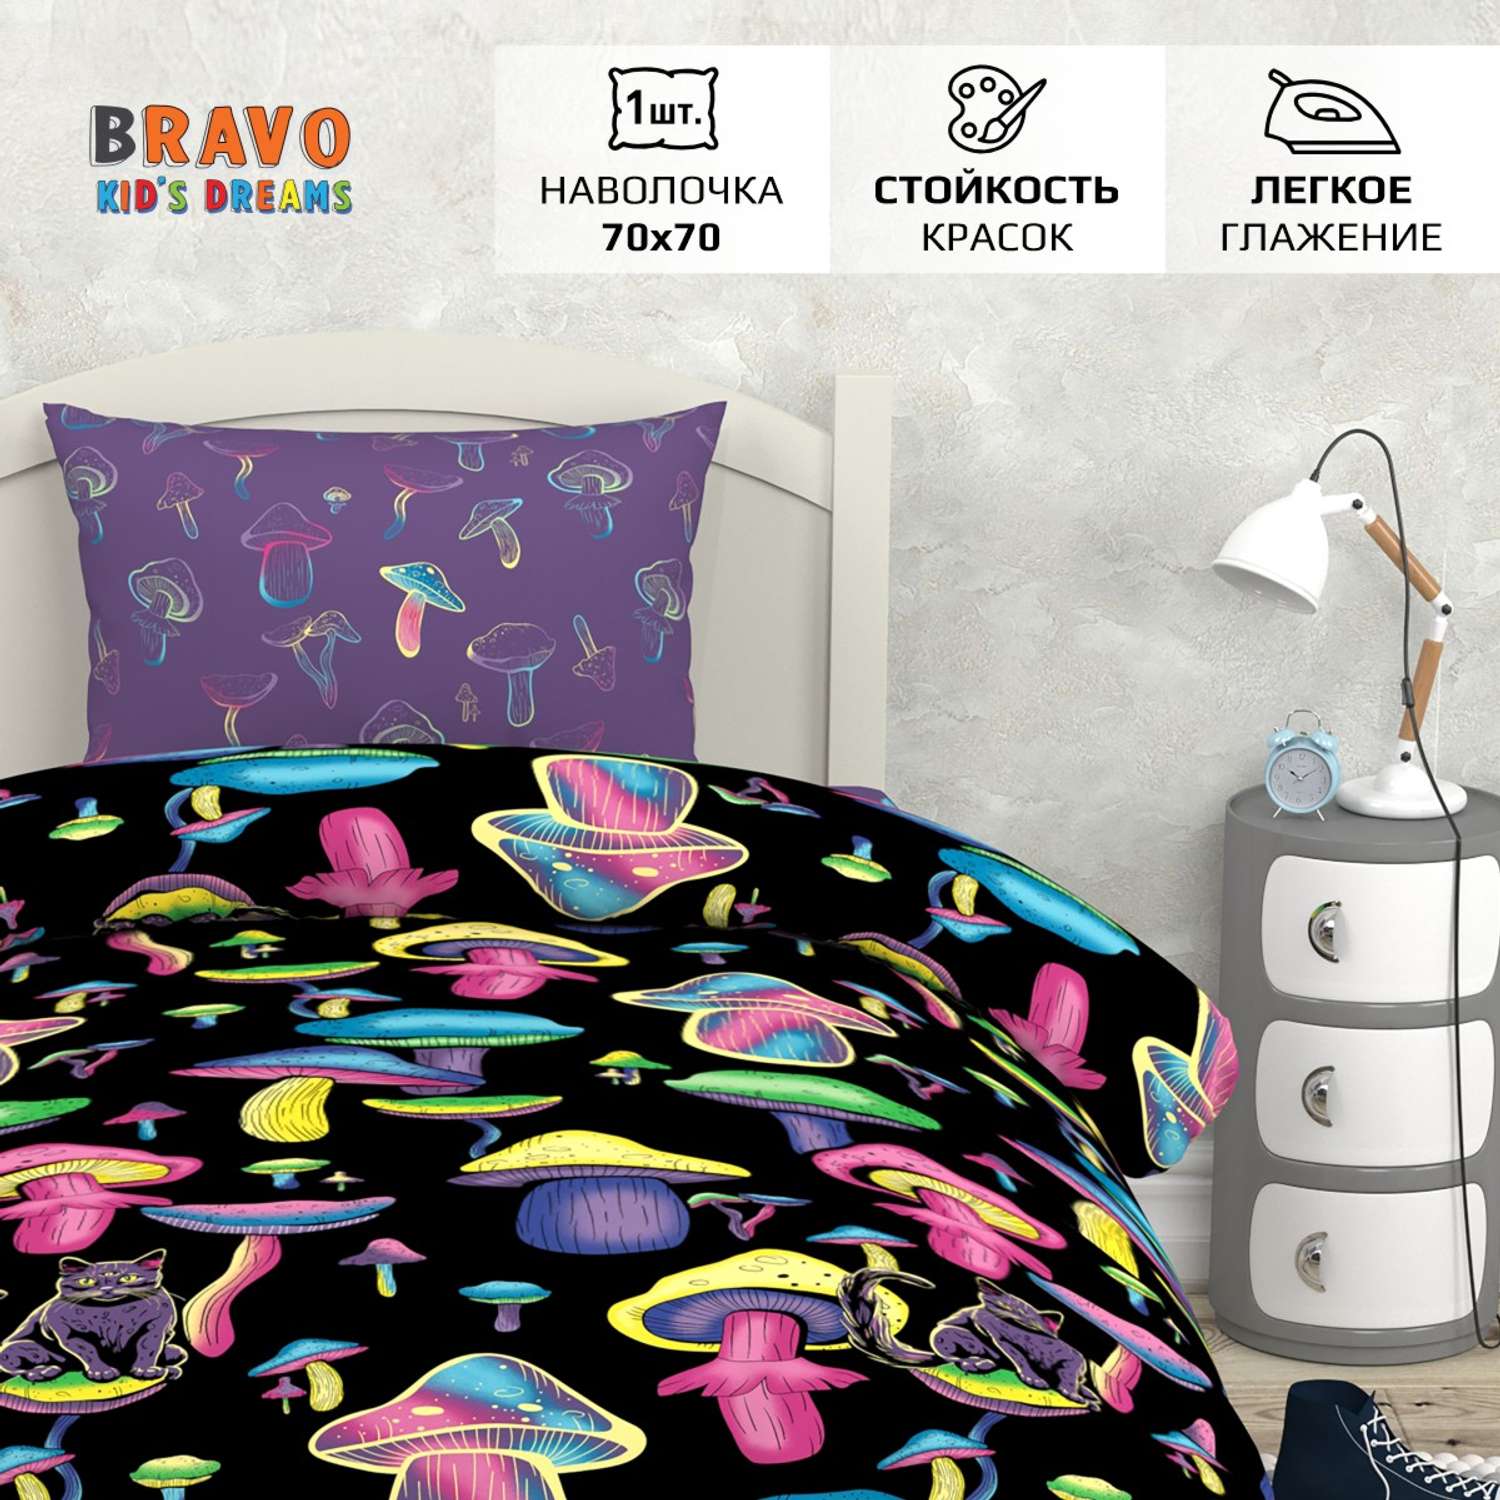 Комплект постельного белья BRAVO kids dreams Грибы 1.5-спальный наволочка 70х70 рис.6105-1+6105а-1 - фото 2